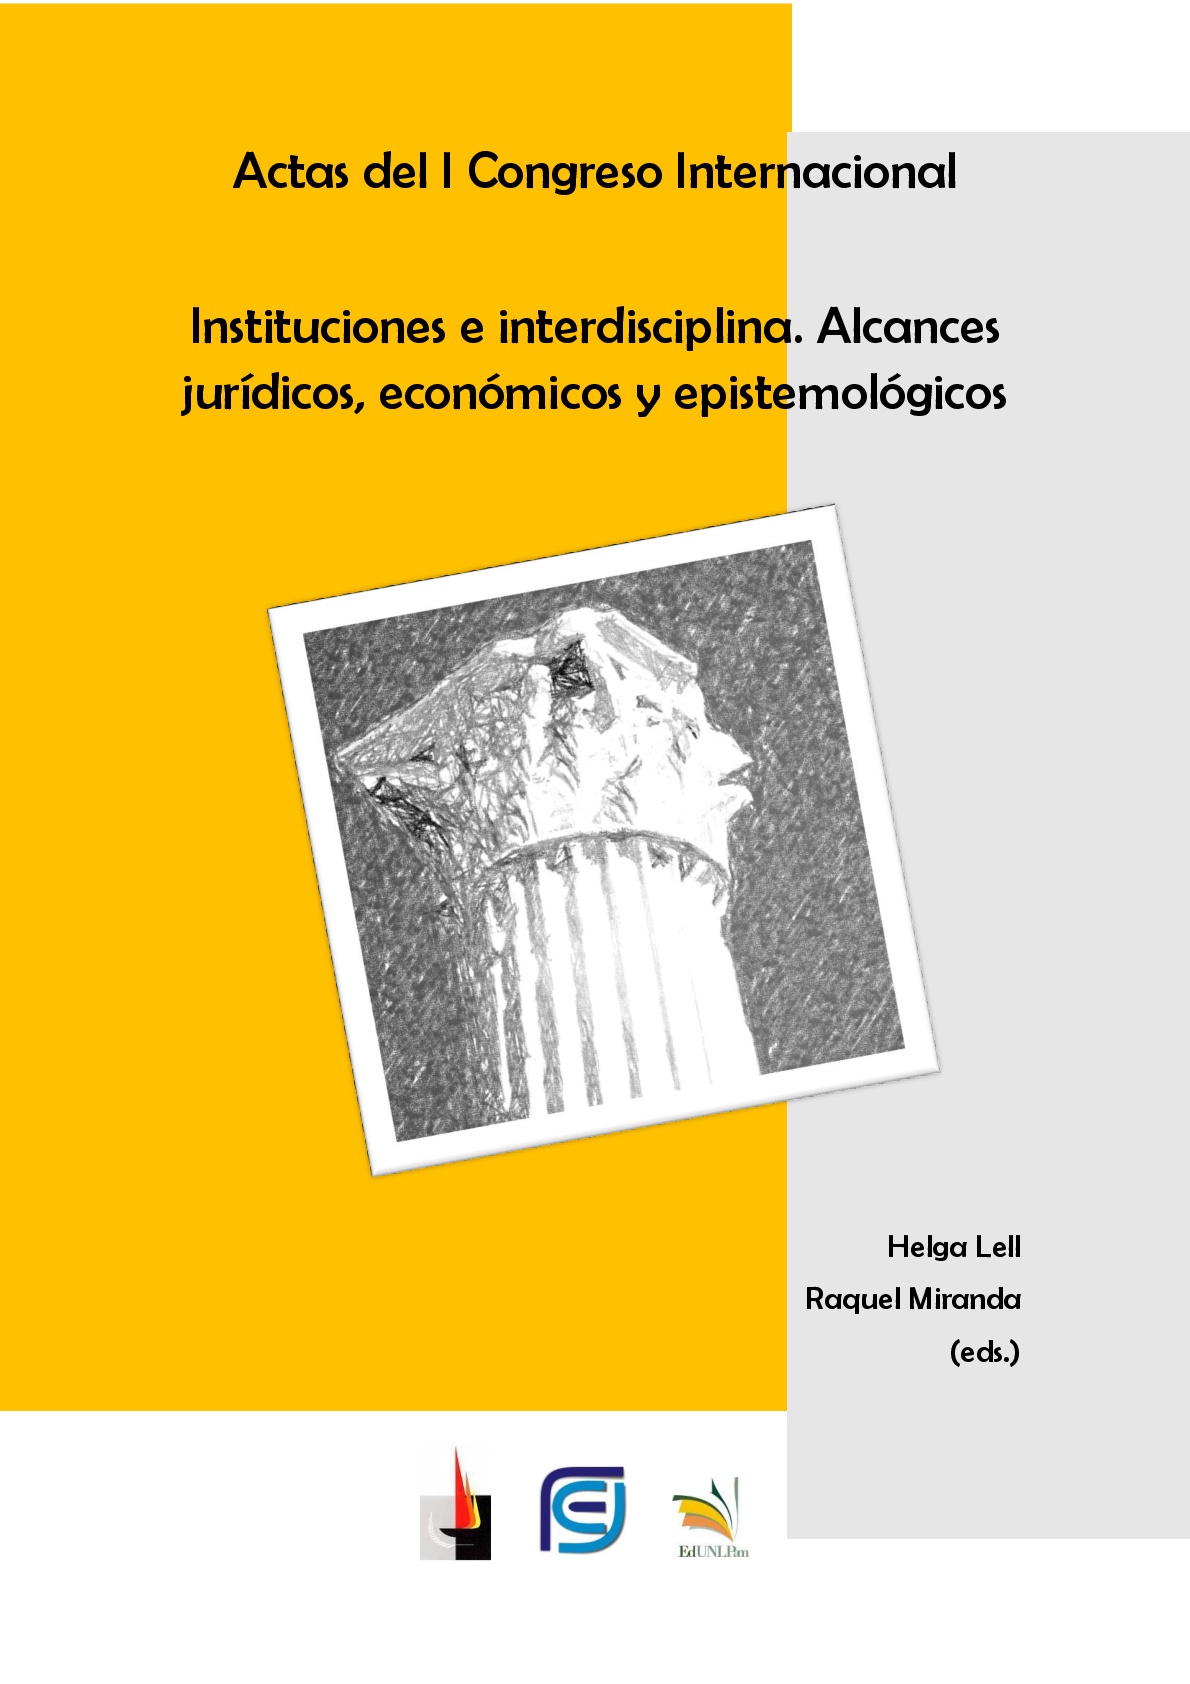 Actas del I Congreso Internacional “Instituciones e interdisciplina”: alcances jurídicos, económicos y epistemológicos